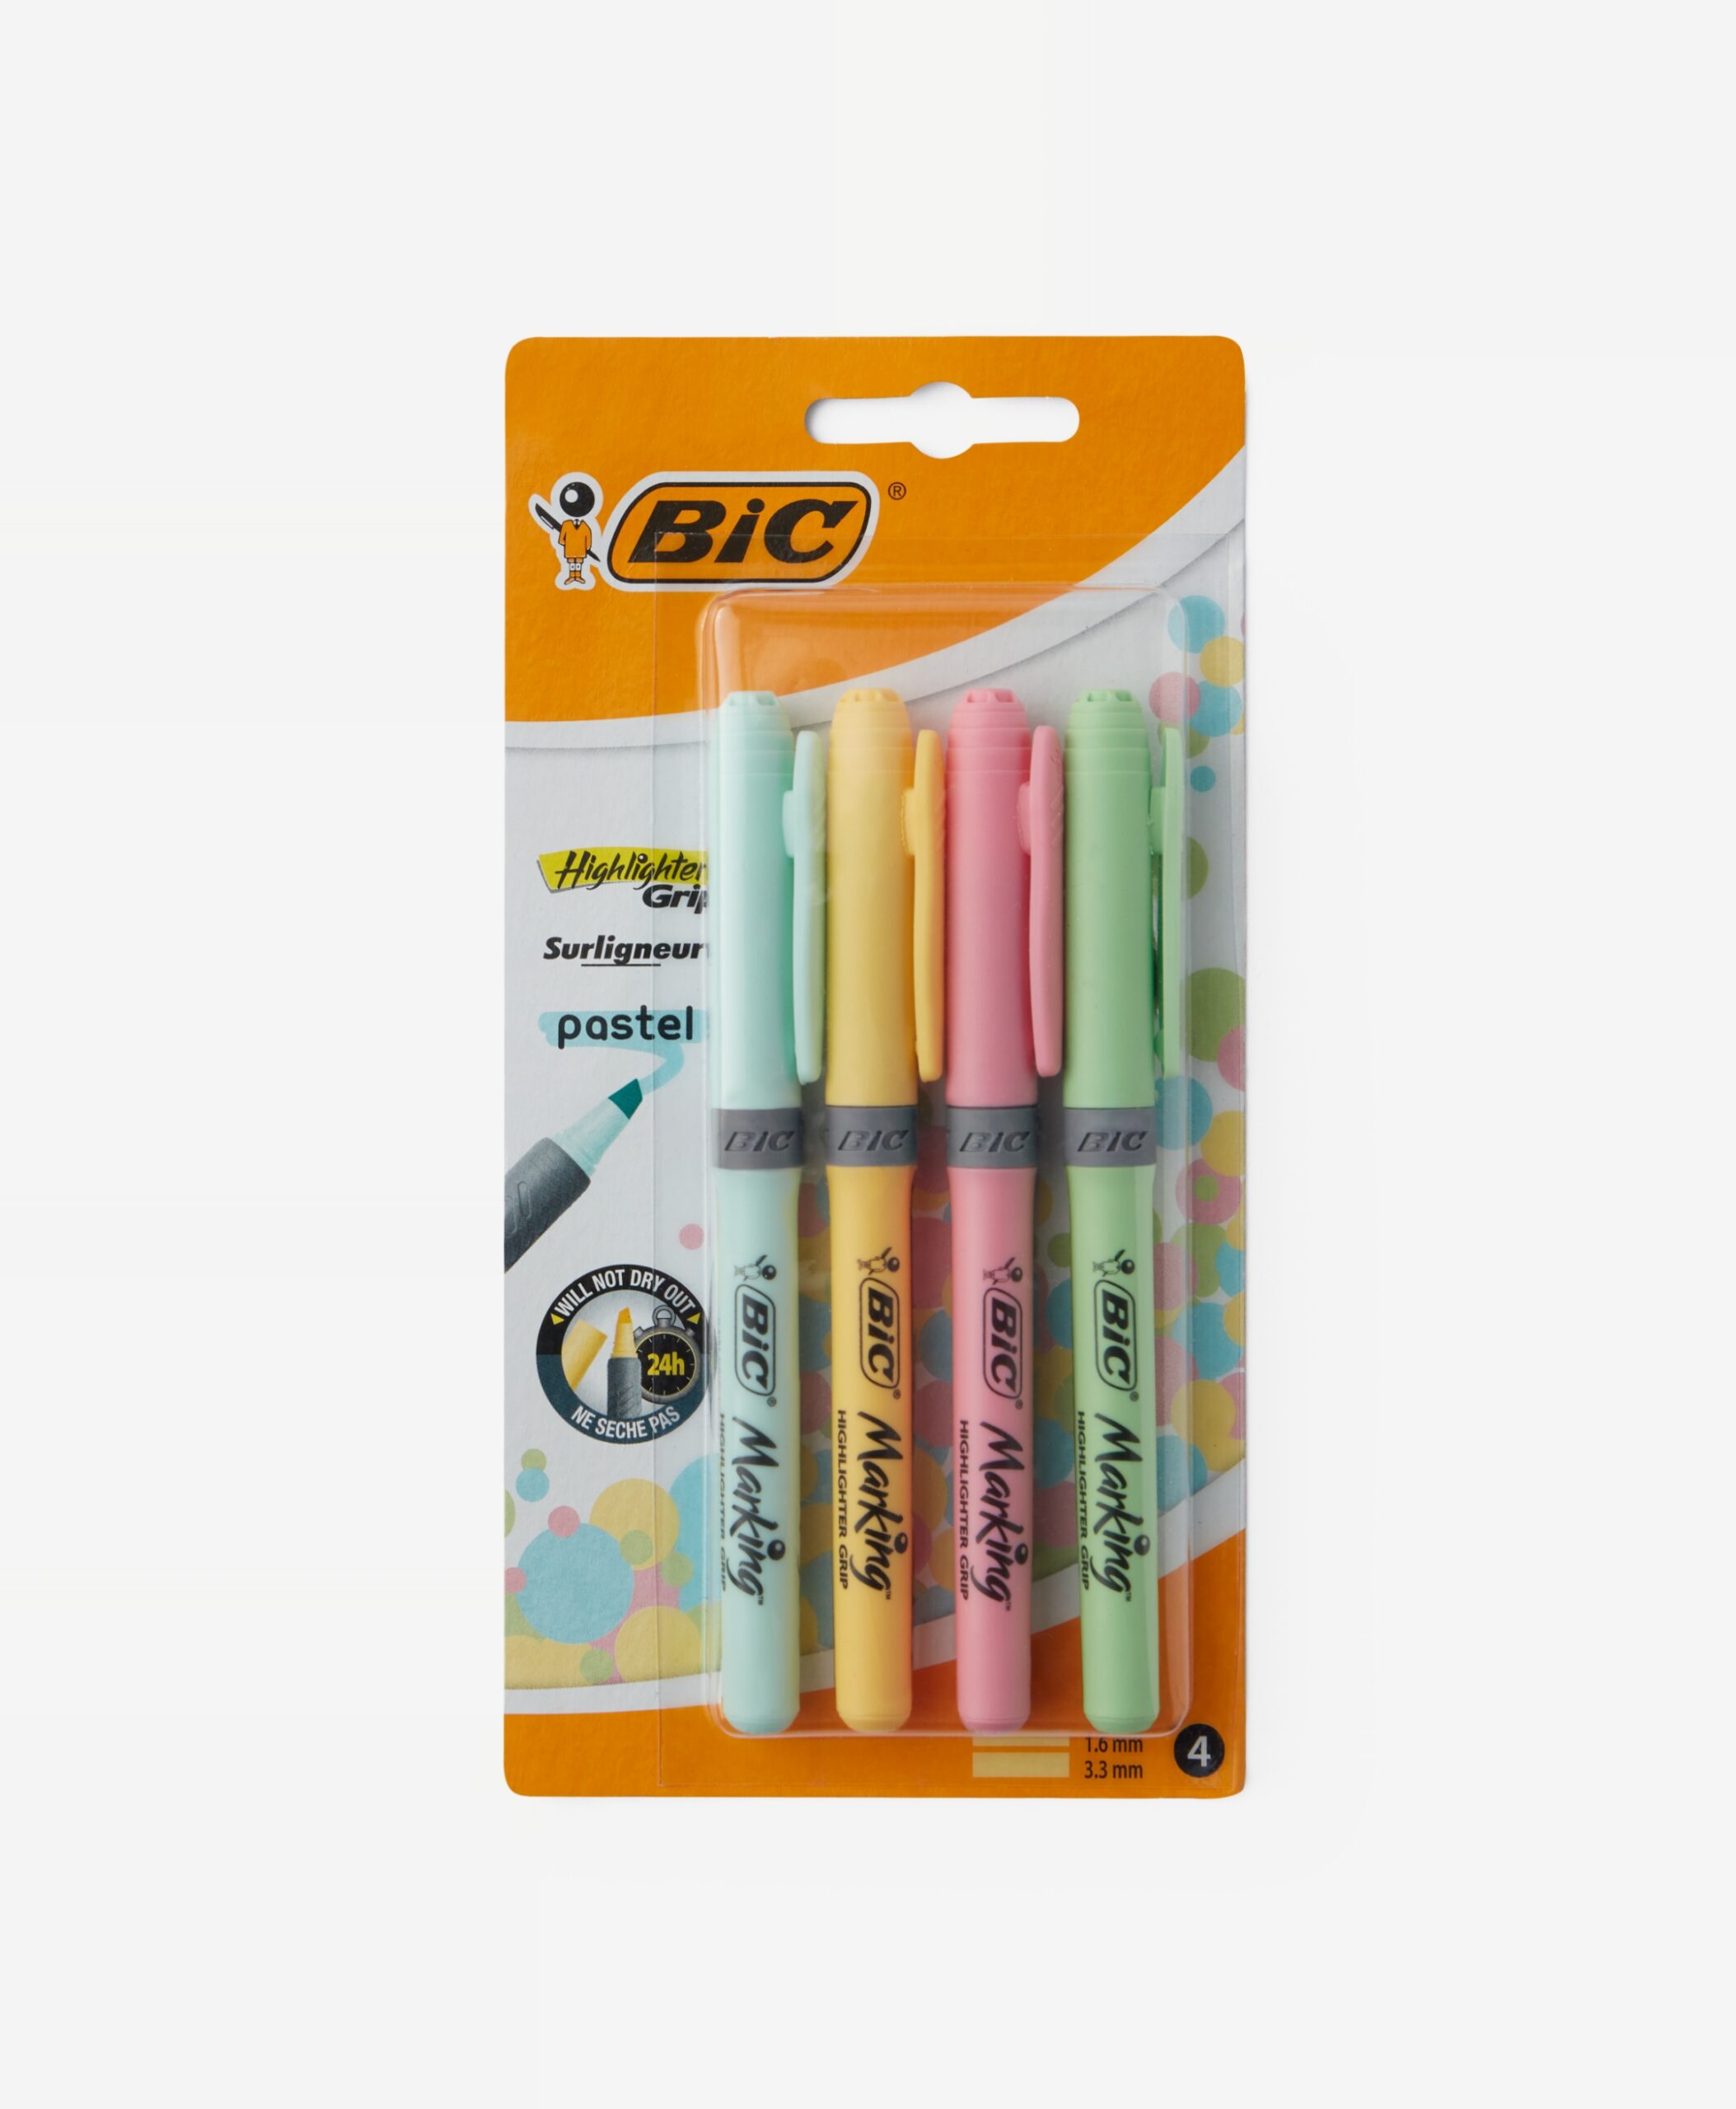 Subrayadores BiC® 4 piezas en colores pastel - Pepco España